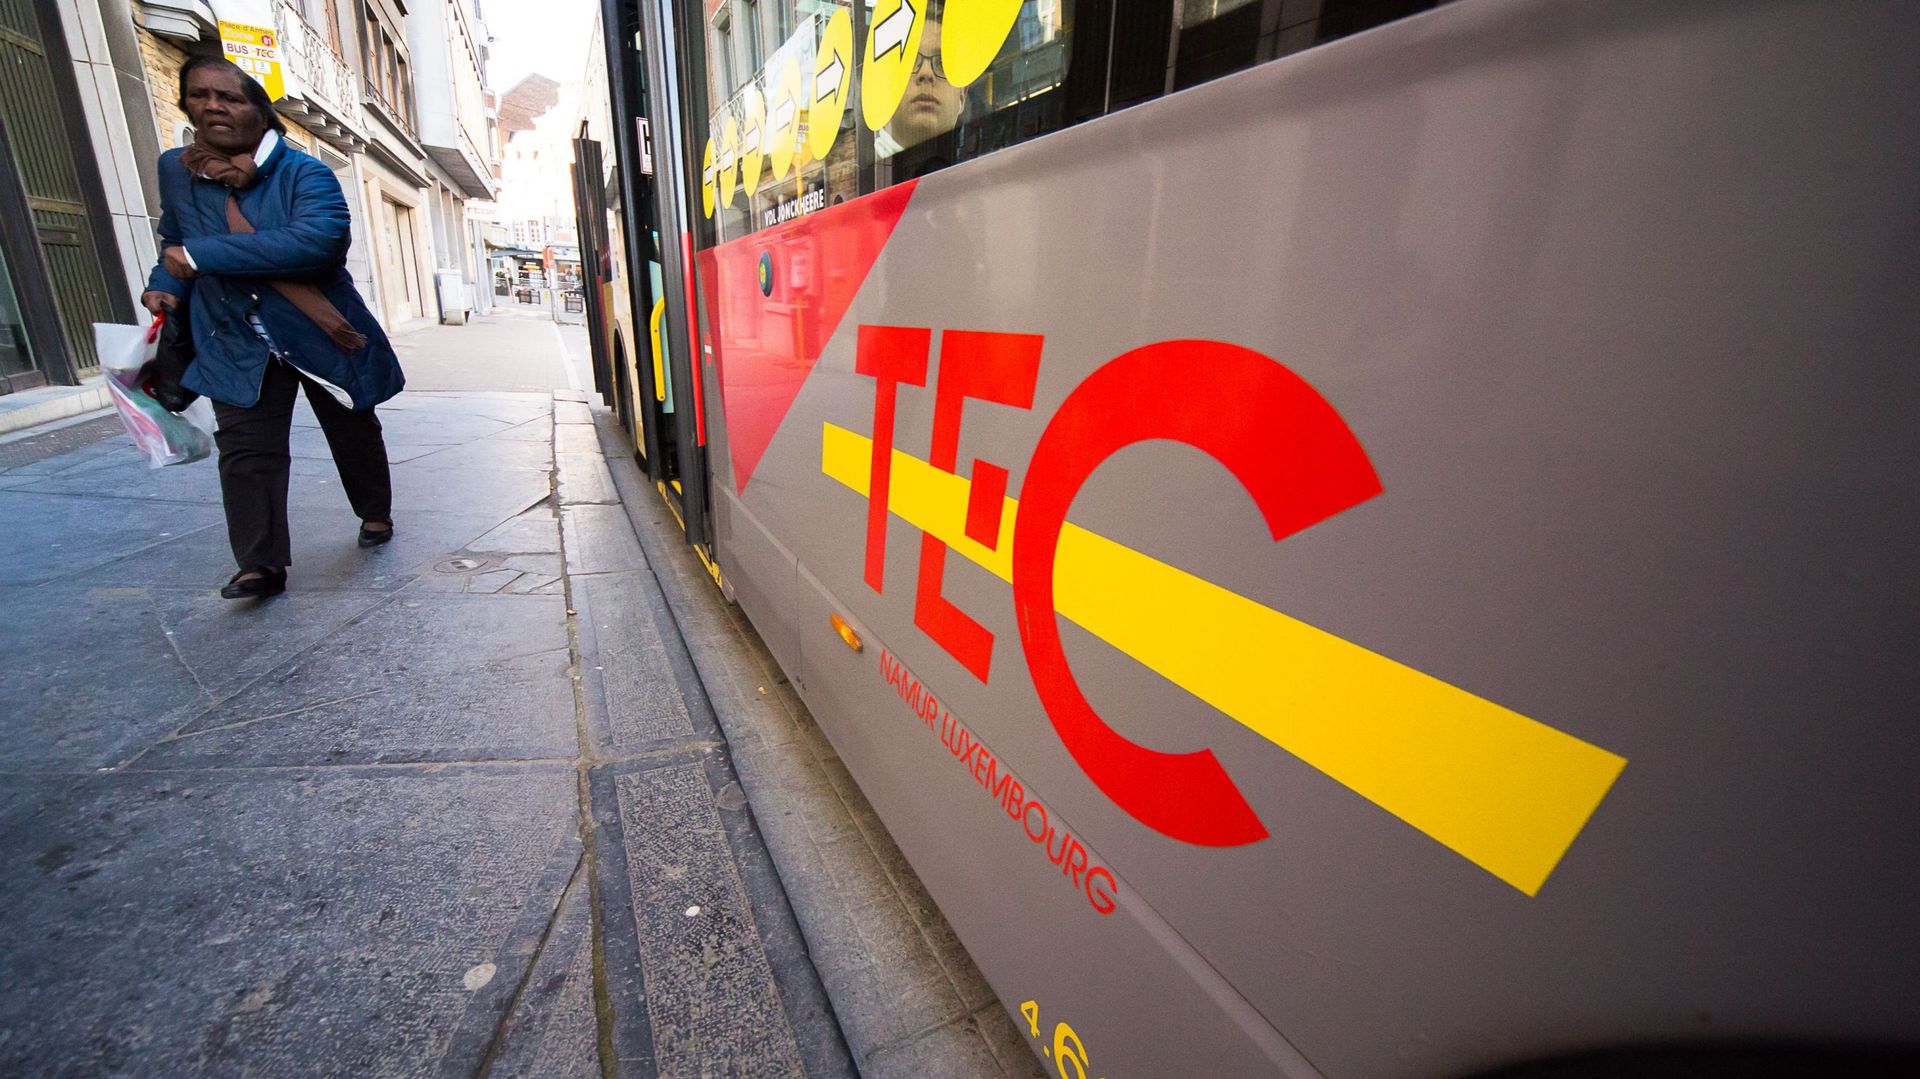 Le TEC roulera gratuitement sur l'ensemble de son réseau les 31 décembre et 1er janvier 2018 "du premier au dernier service", est-il encore précisé.